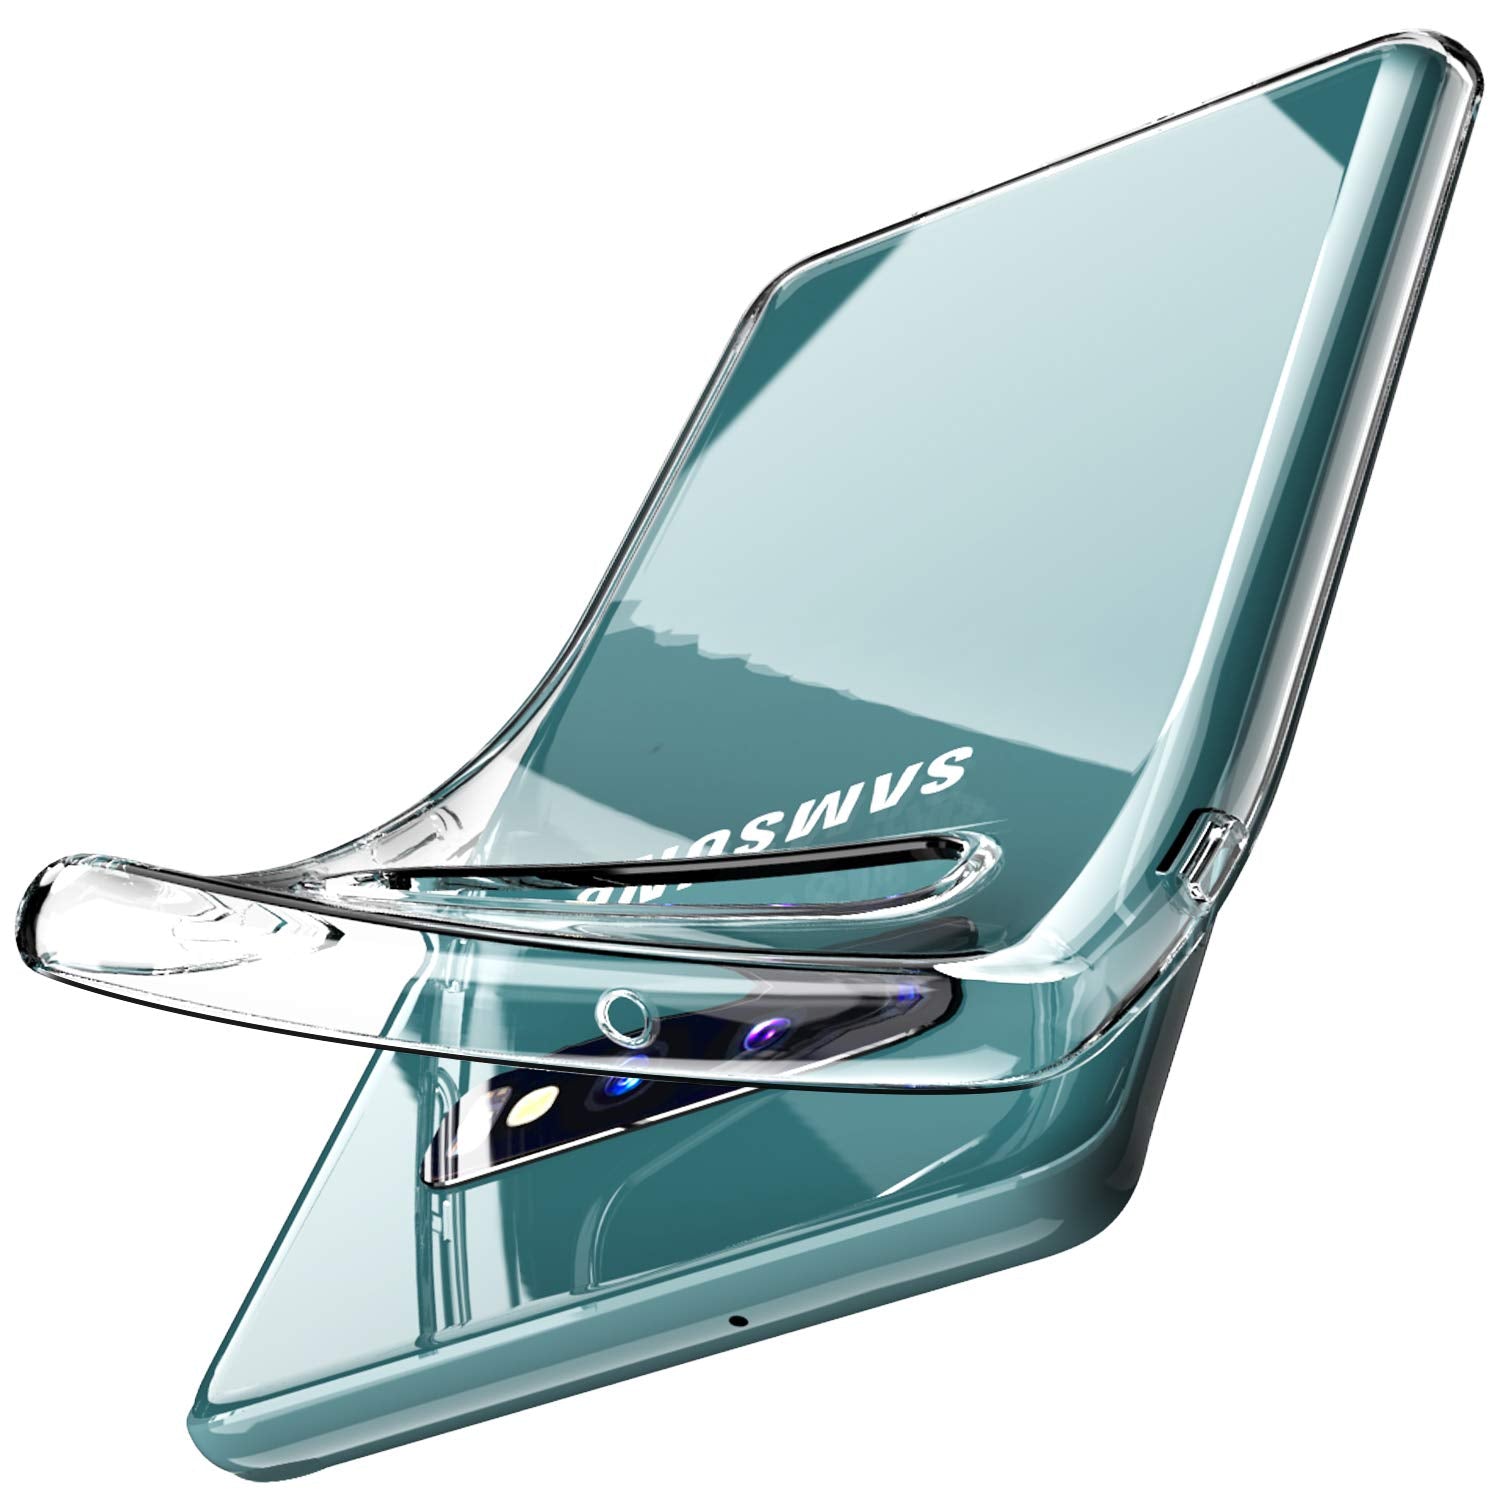 Clear gel case for Samsung Galaxy S10